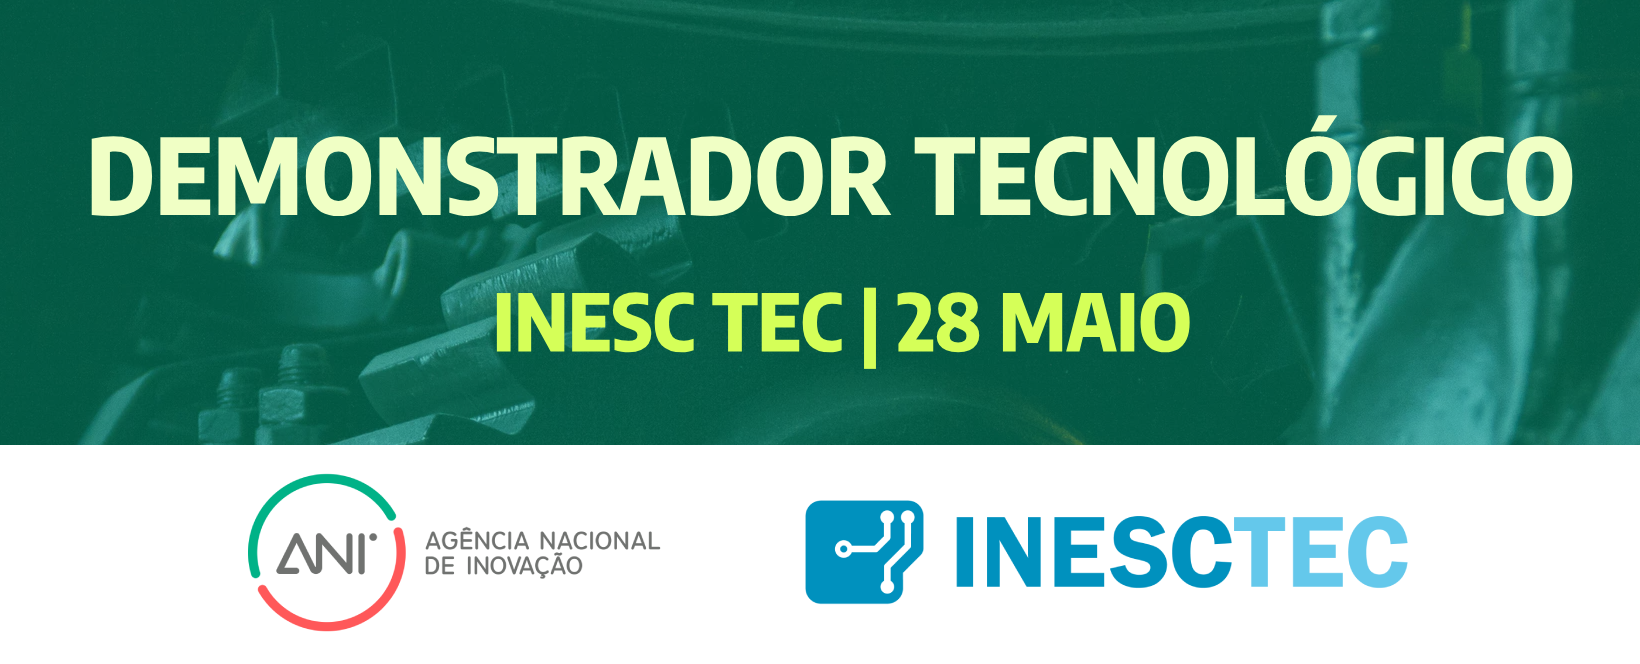 Reportagem: Demonstrador Tecnológico no INESC TEC inaugura novo laboratório de Indústria 4.0